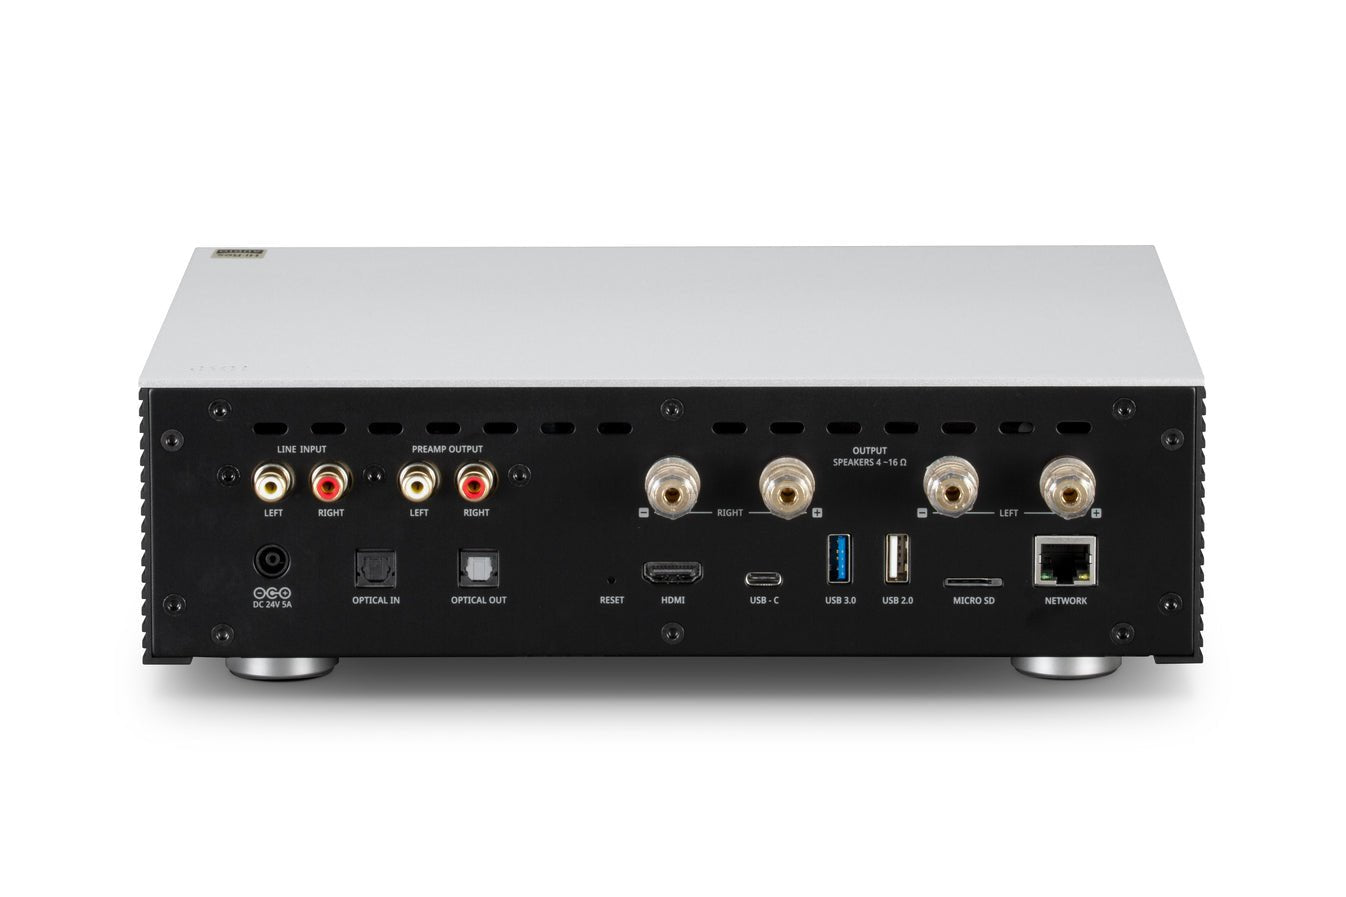 HiFi Rose RS201E Integrated Amp & Network Streamer - Dreamedia AV